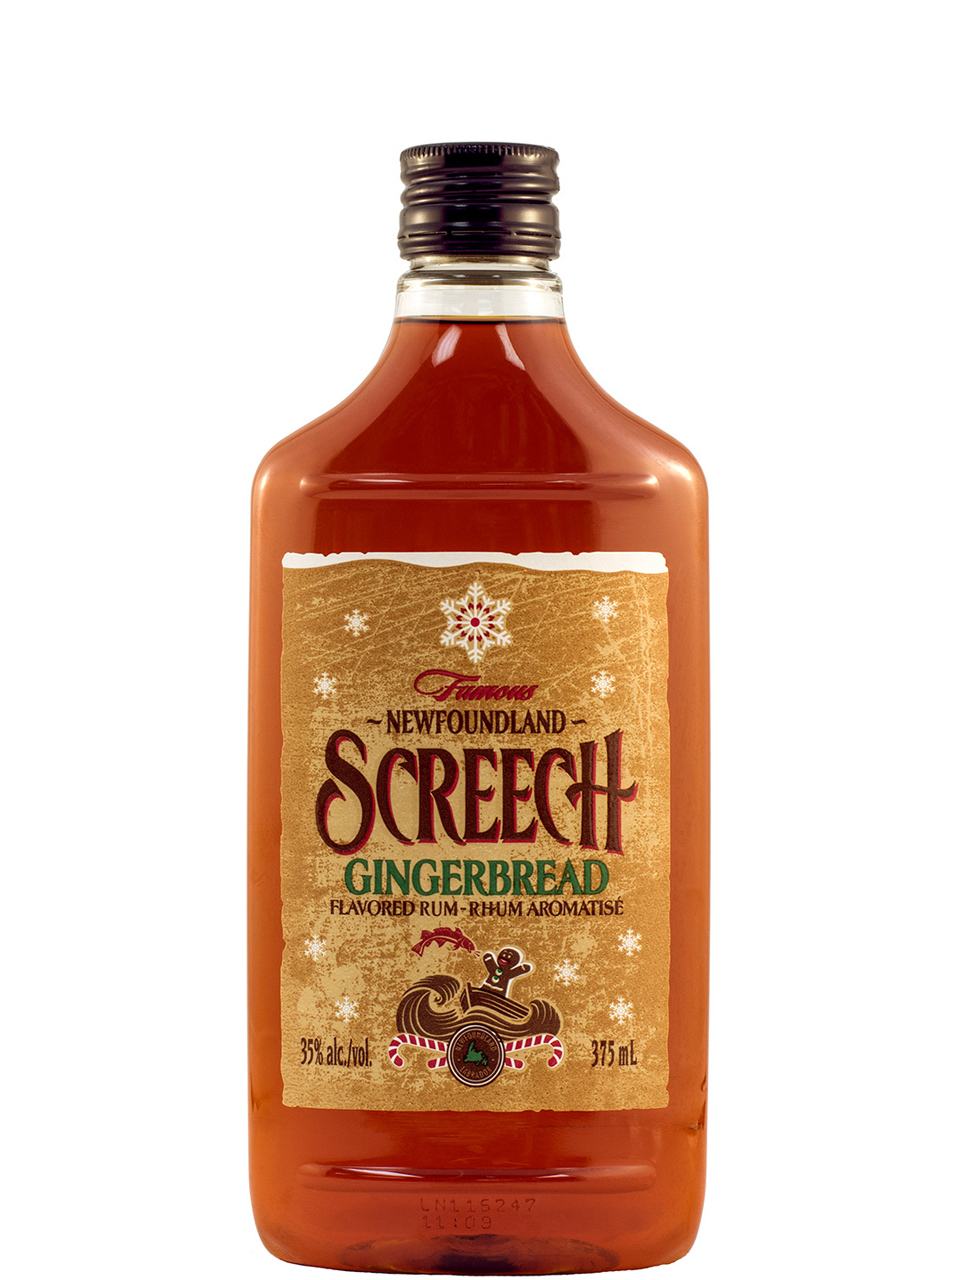 Screech Gingerbread Newfoundland Labrador Liquor Corporation